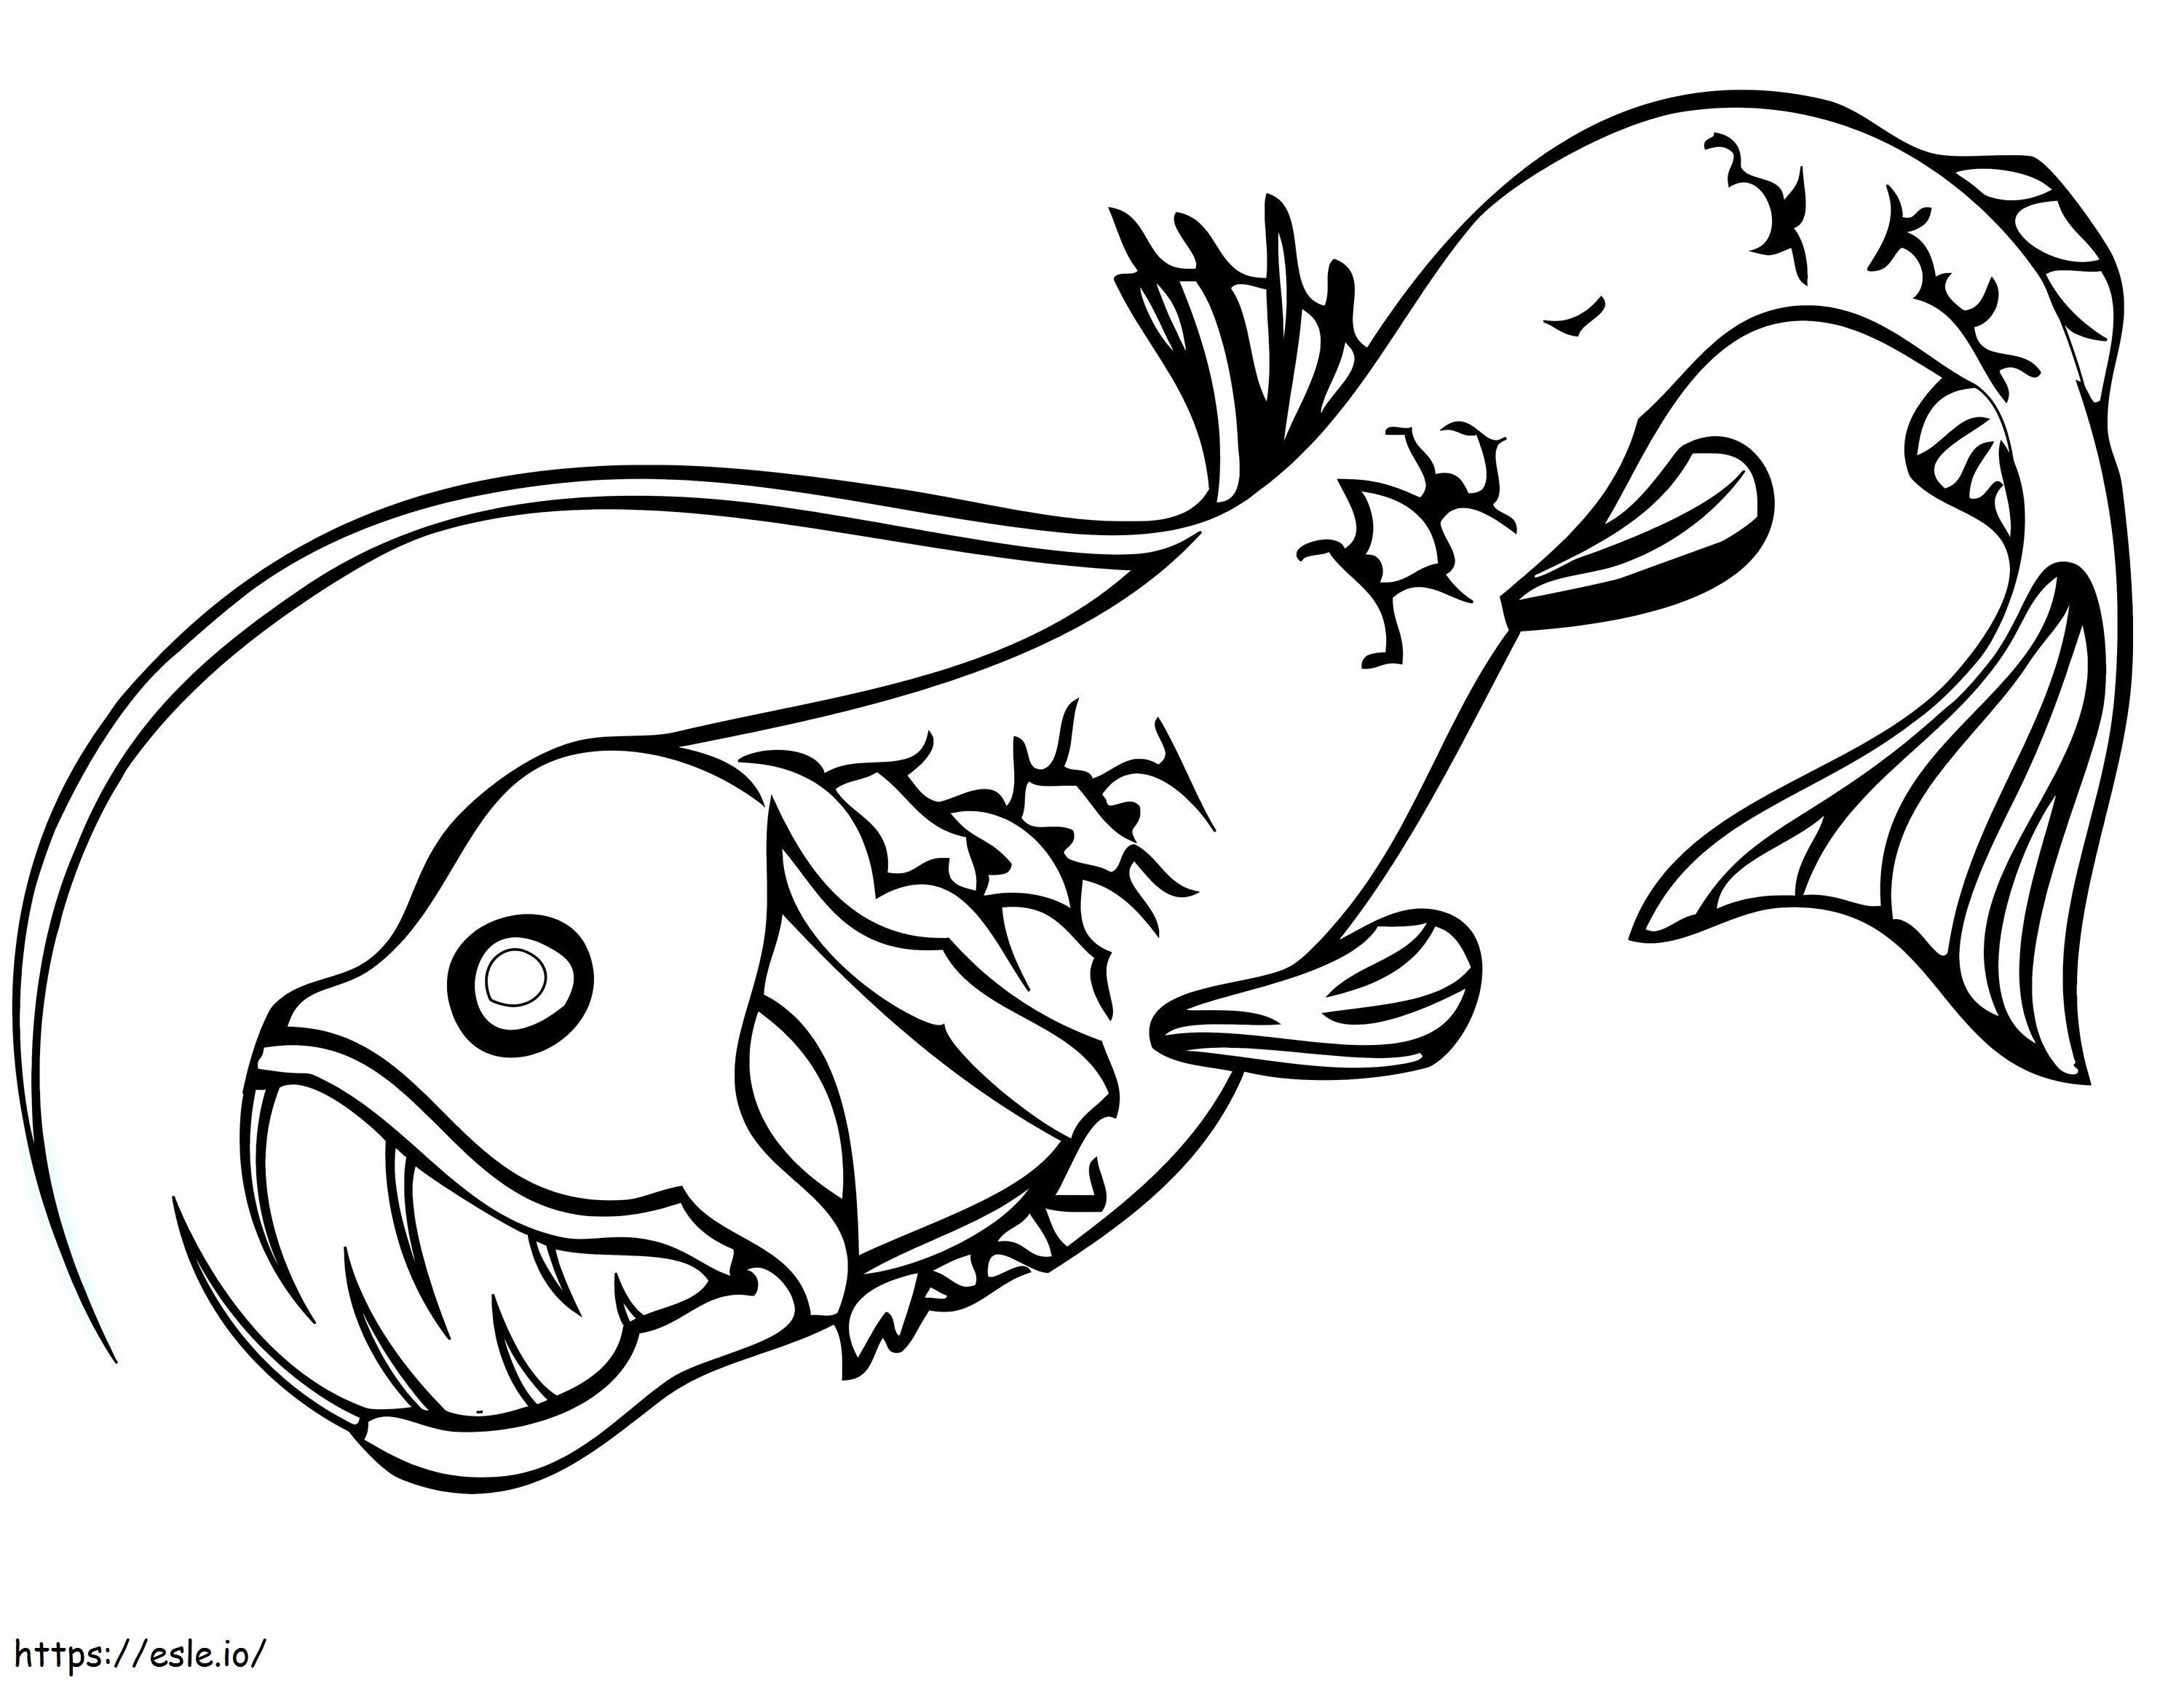 Um peixe-víbora para colorir